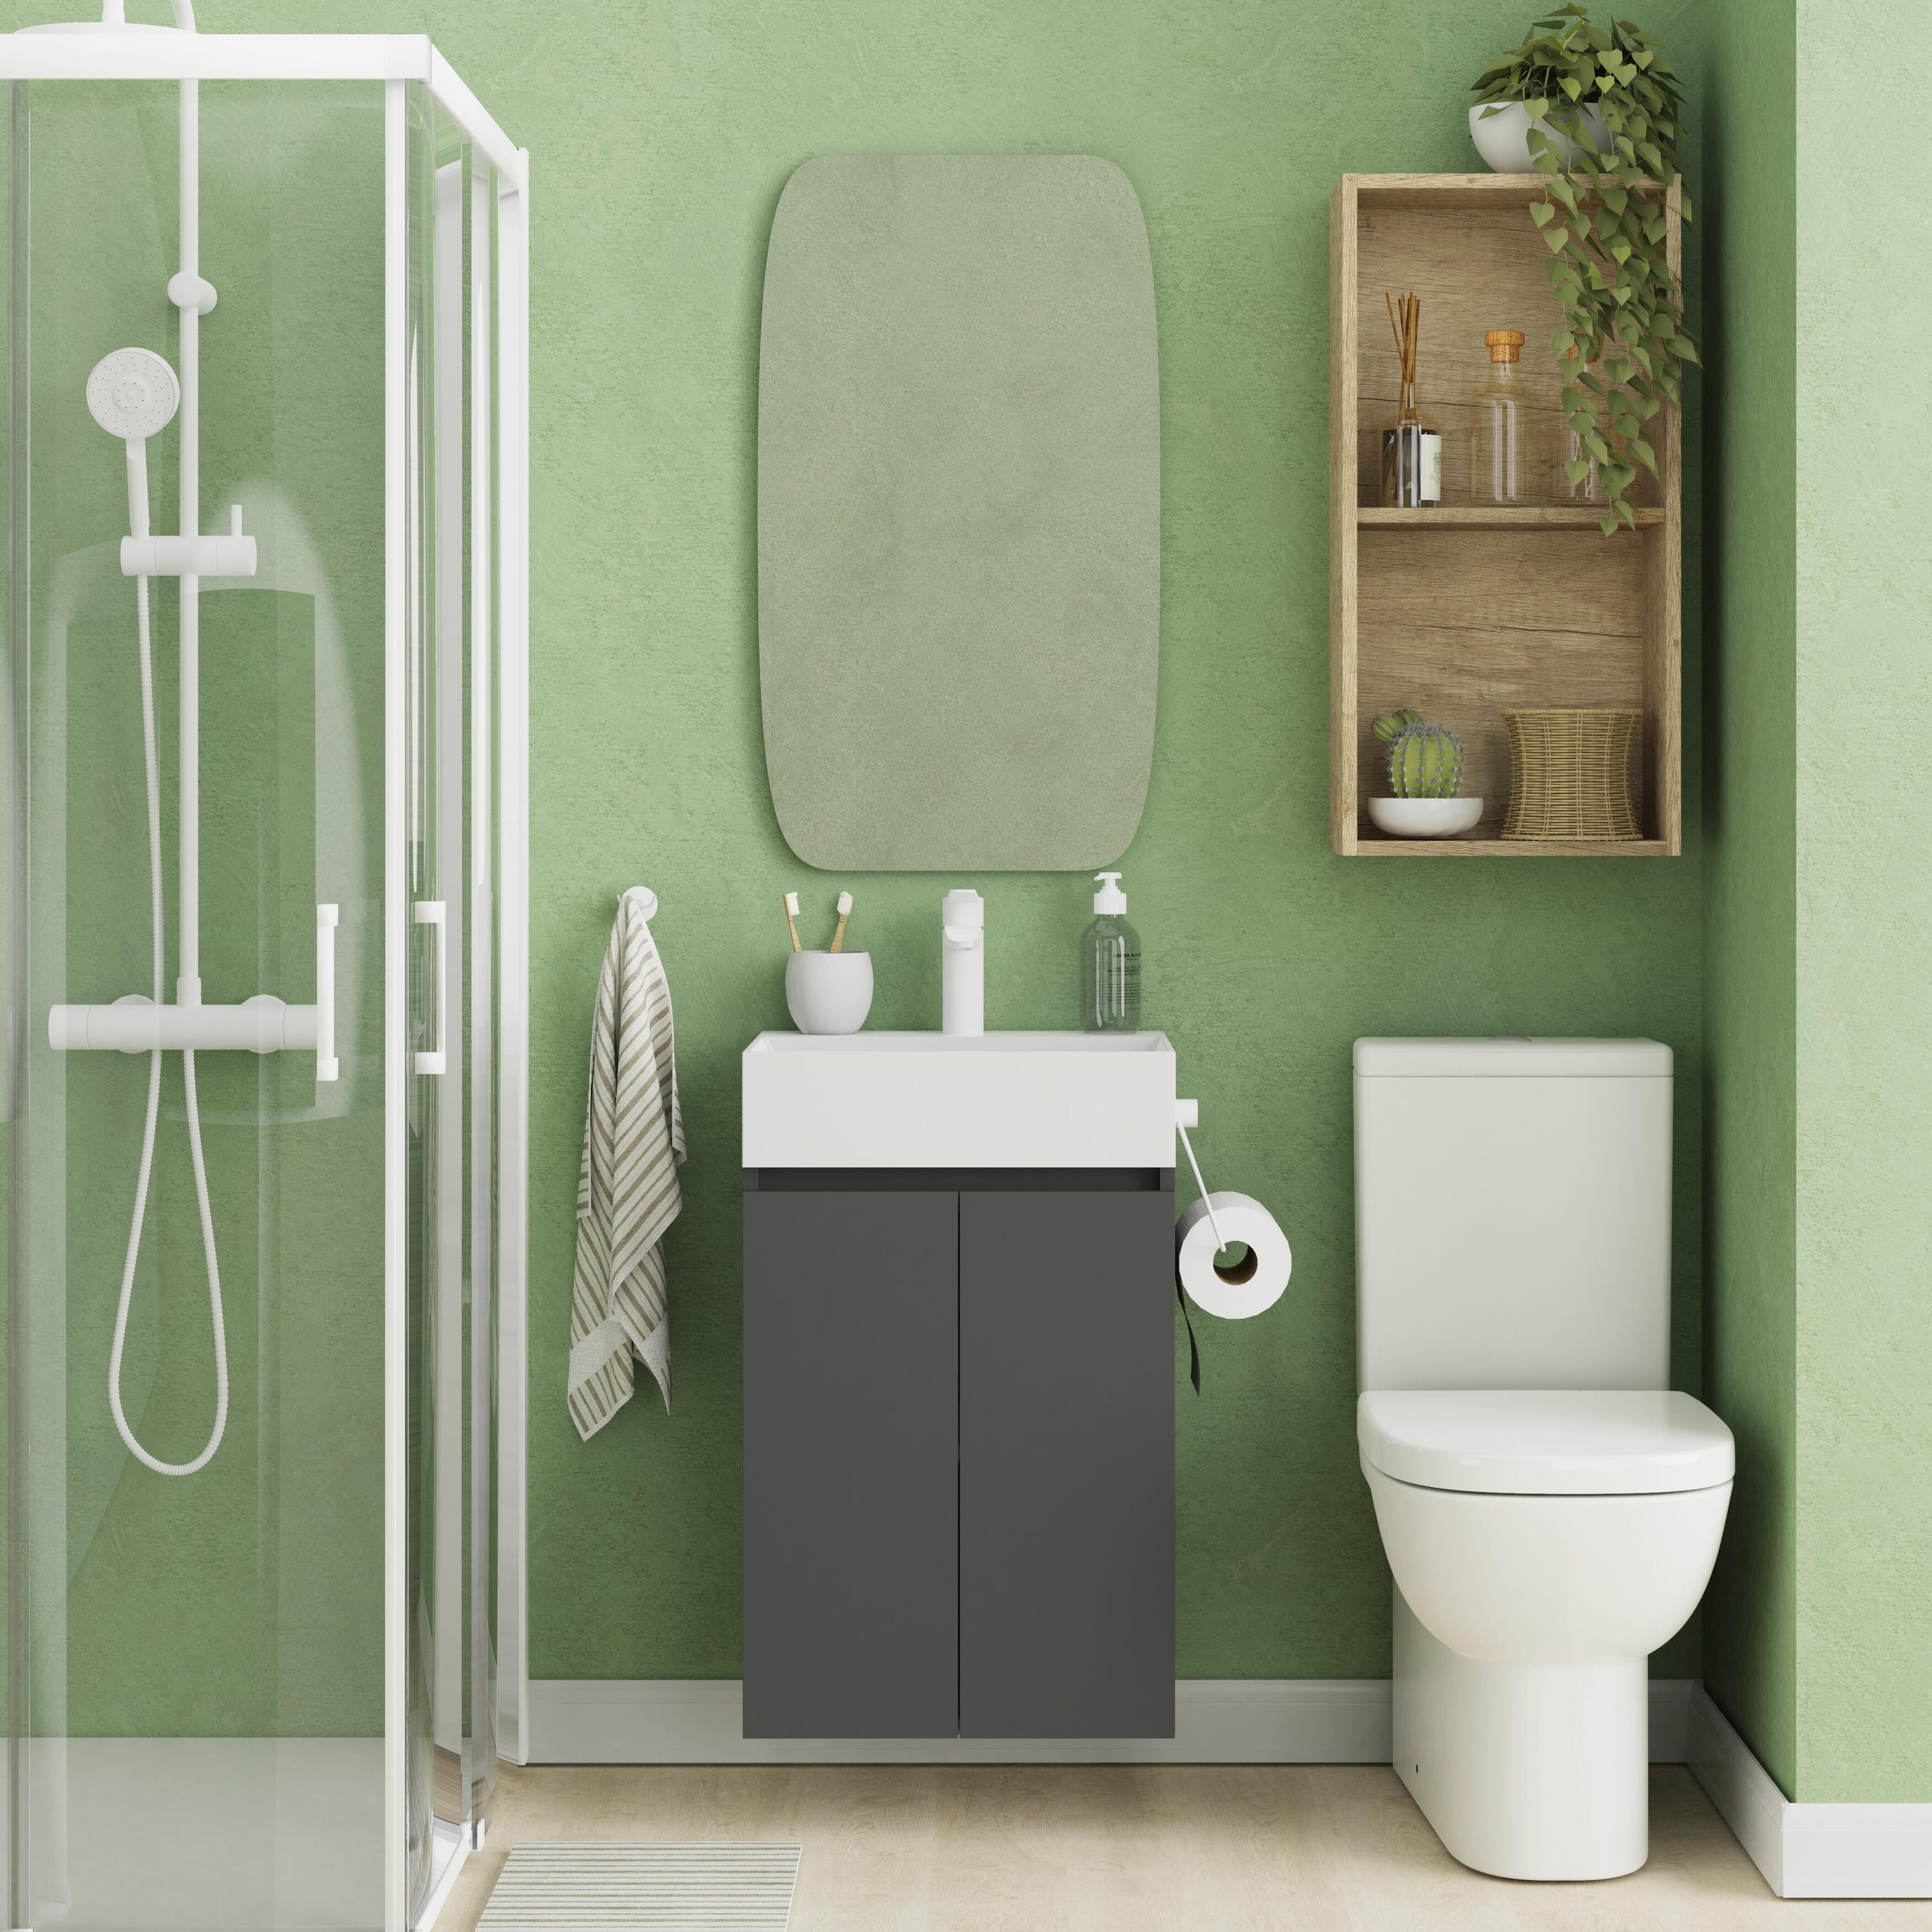 Baño Gris con Cuadro  Bathroom interior, Bathroom design, Bathroom  inspiration